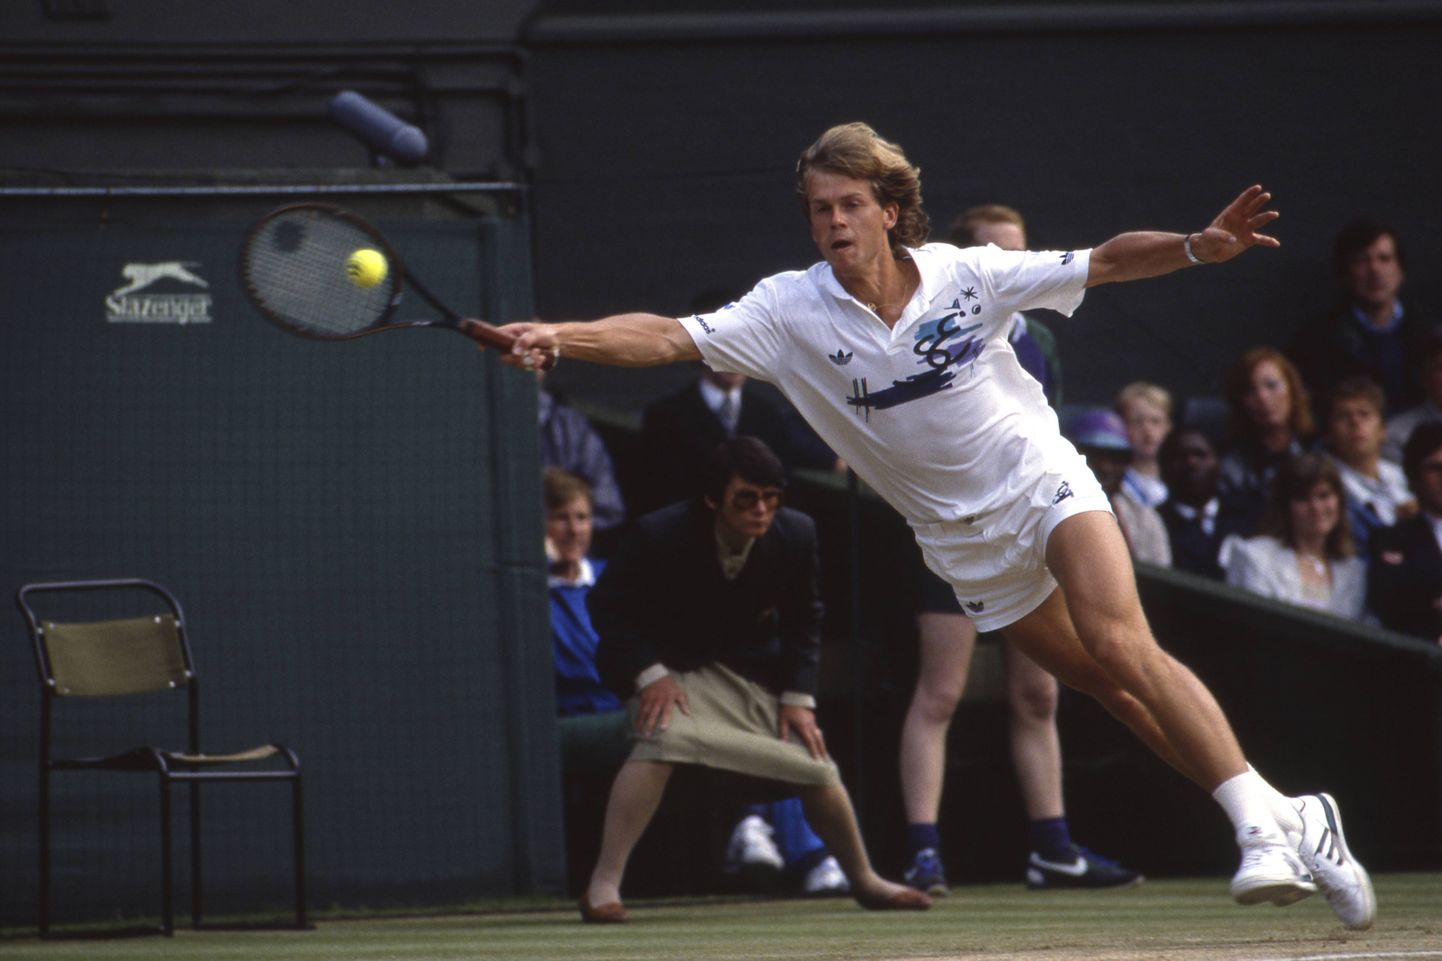 Rootsi tennisetäht Stefan Edberg 22-aastasena Wimbledoni tiitlit jahtimas. 1988. aasta London.